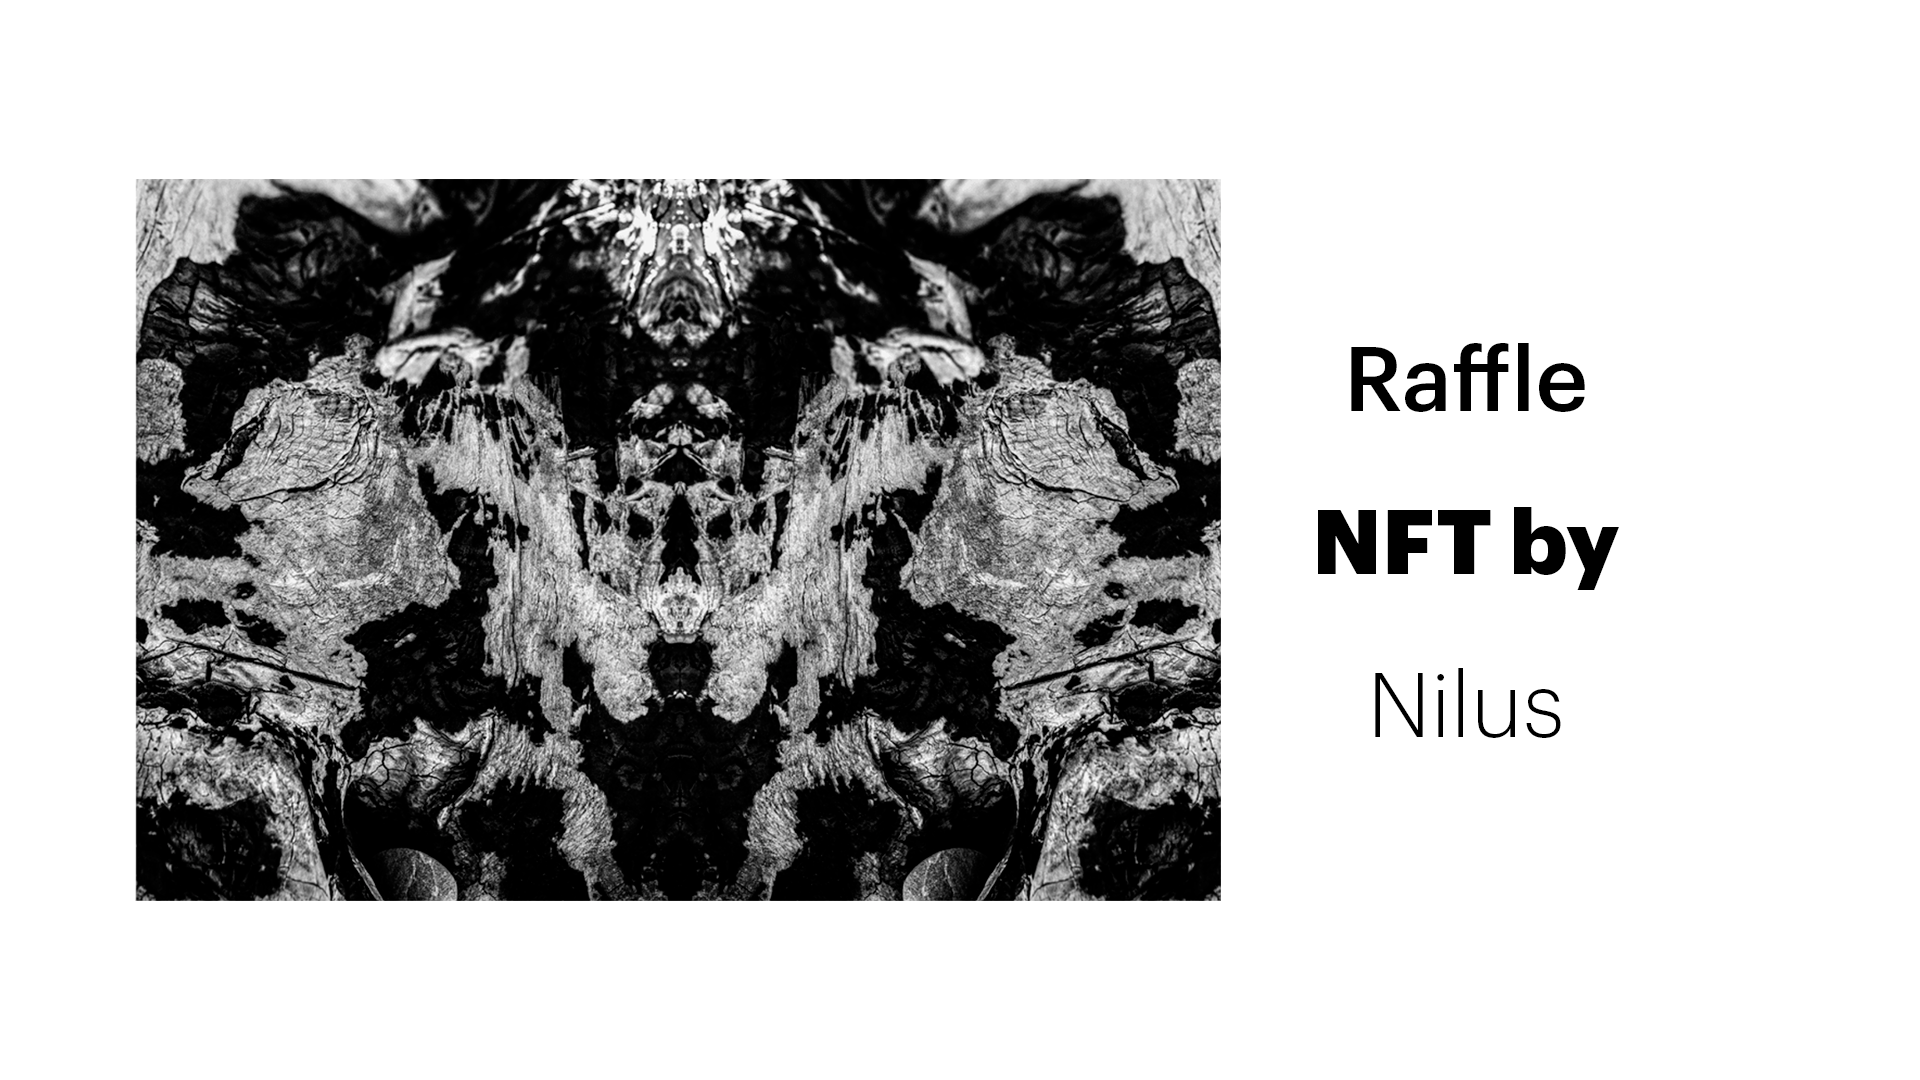 Raffle NFT by Nilus